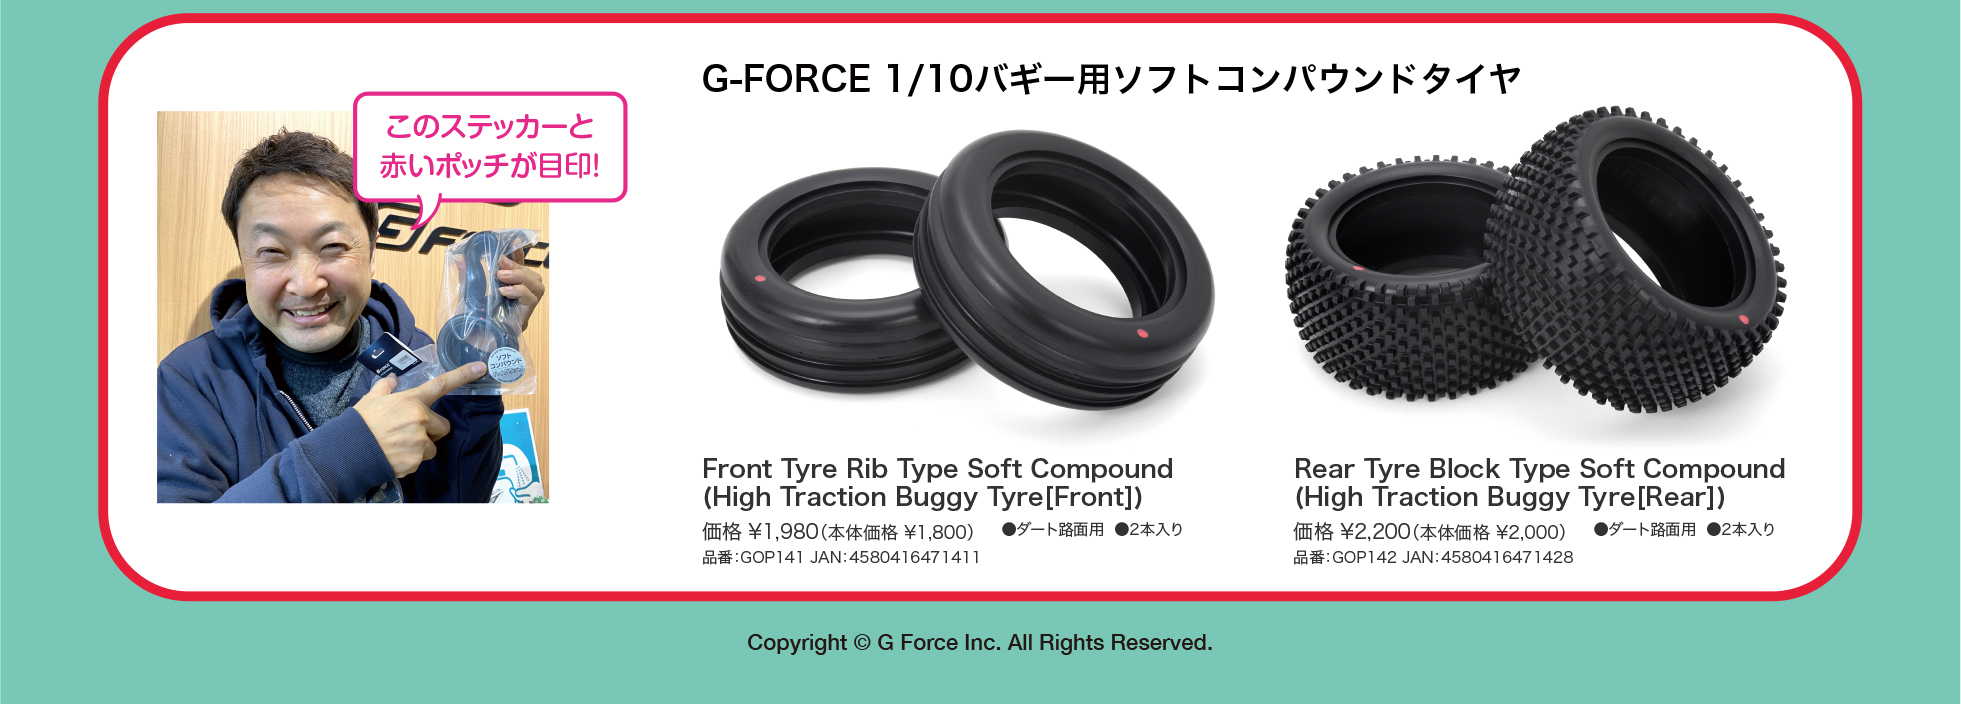 G-FORCE ソフトコンパウンドフロントタイヤ